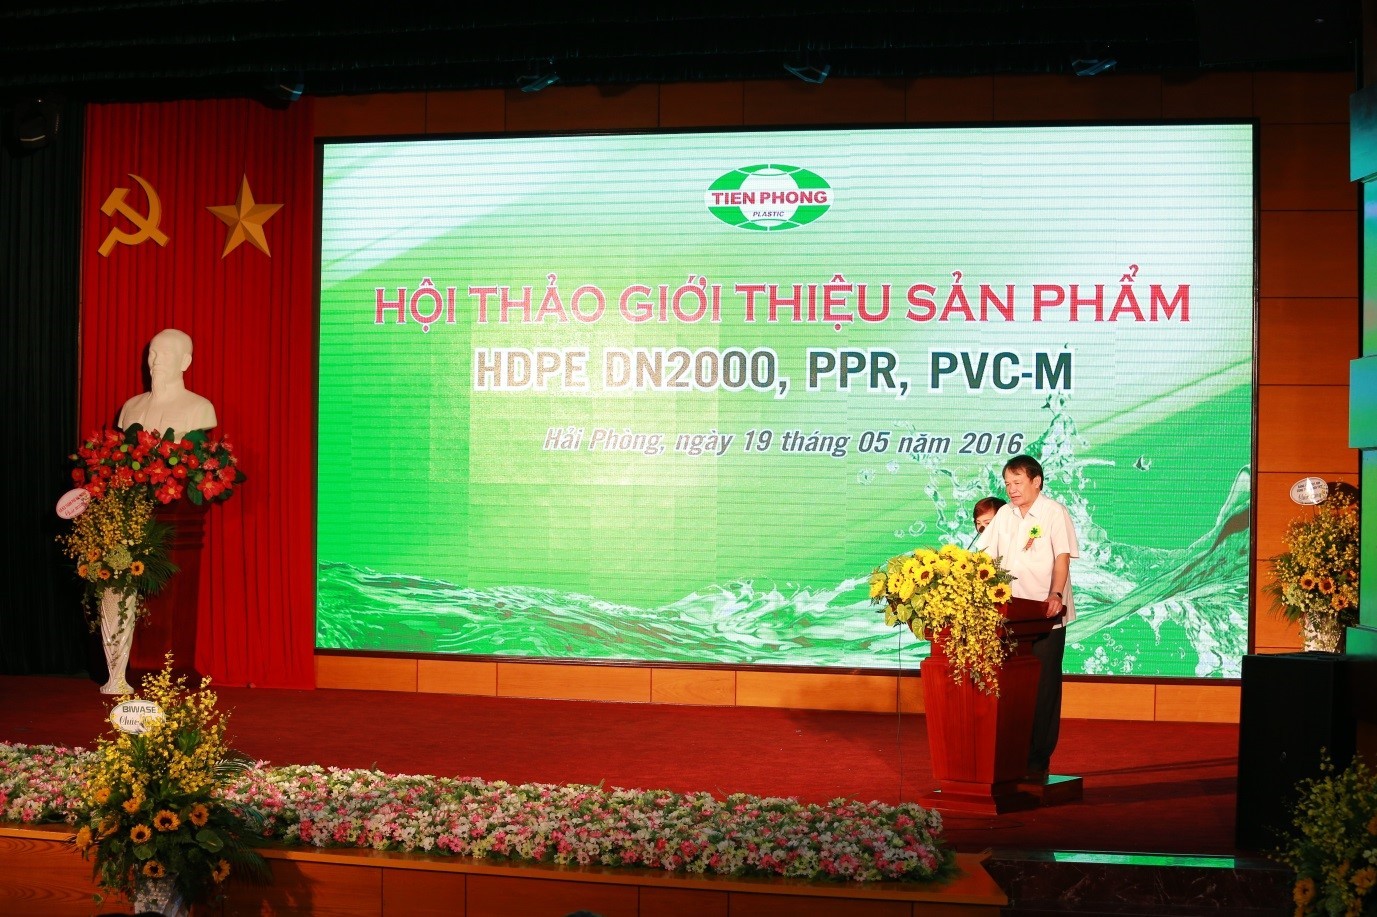 Nhựa Tiền Phong tổ chức hội thảo và giới thiệu sản phẩm HDPE DN2000 và một số sản phẩm mới